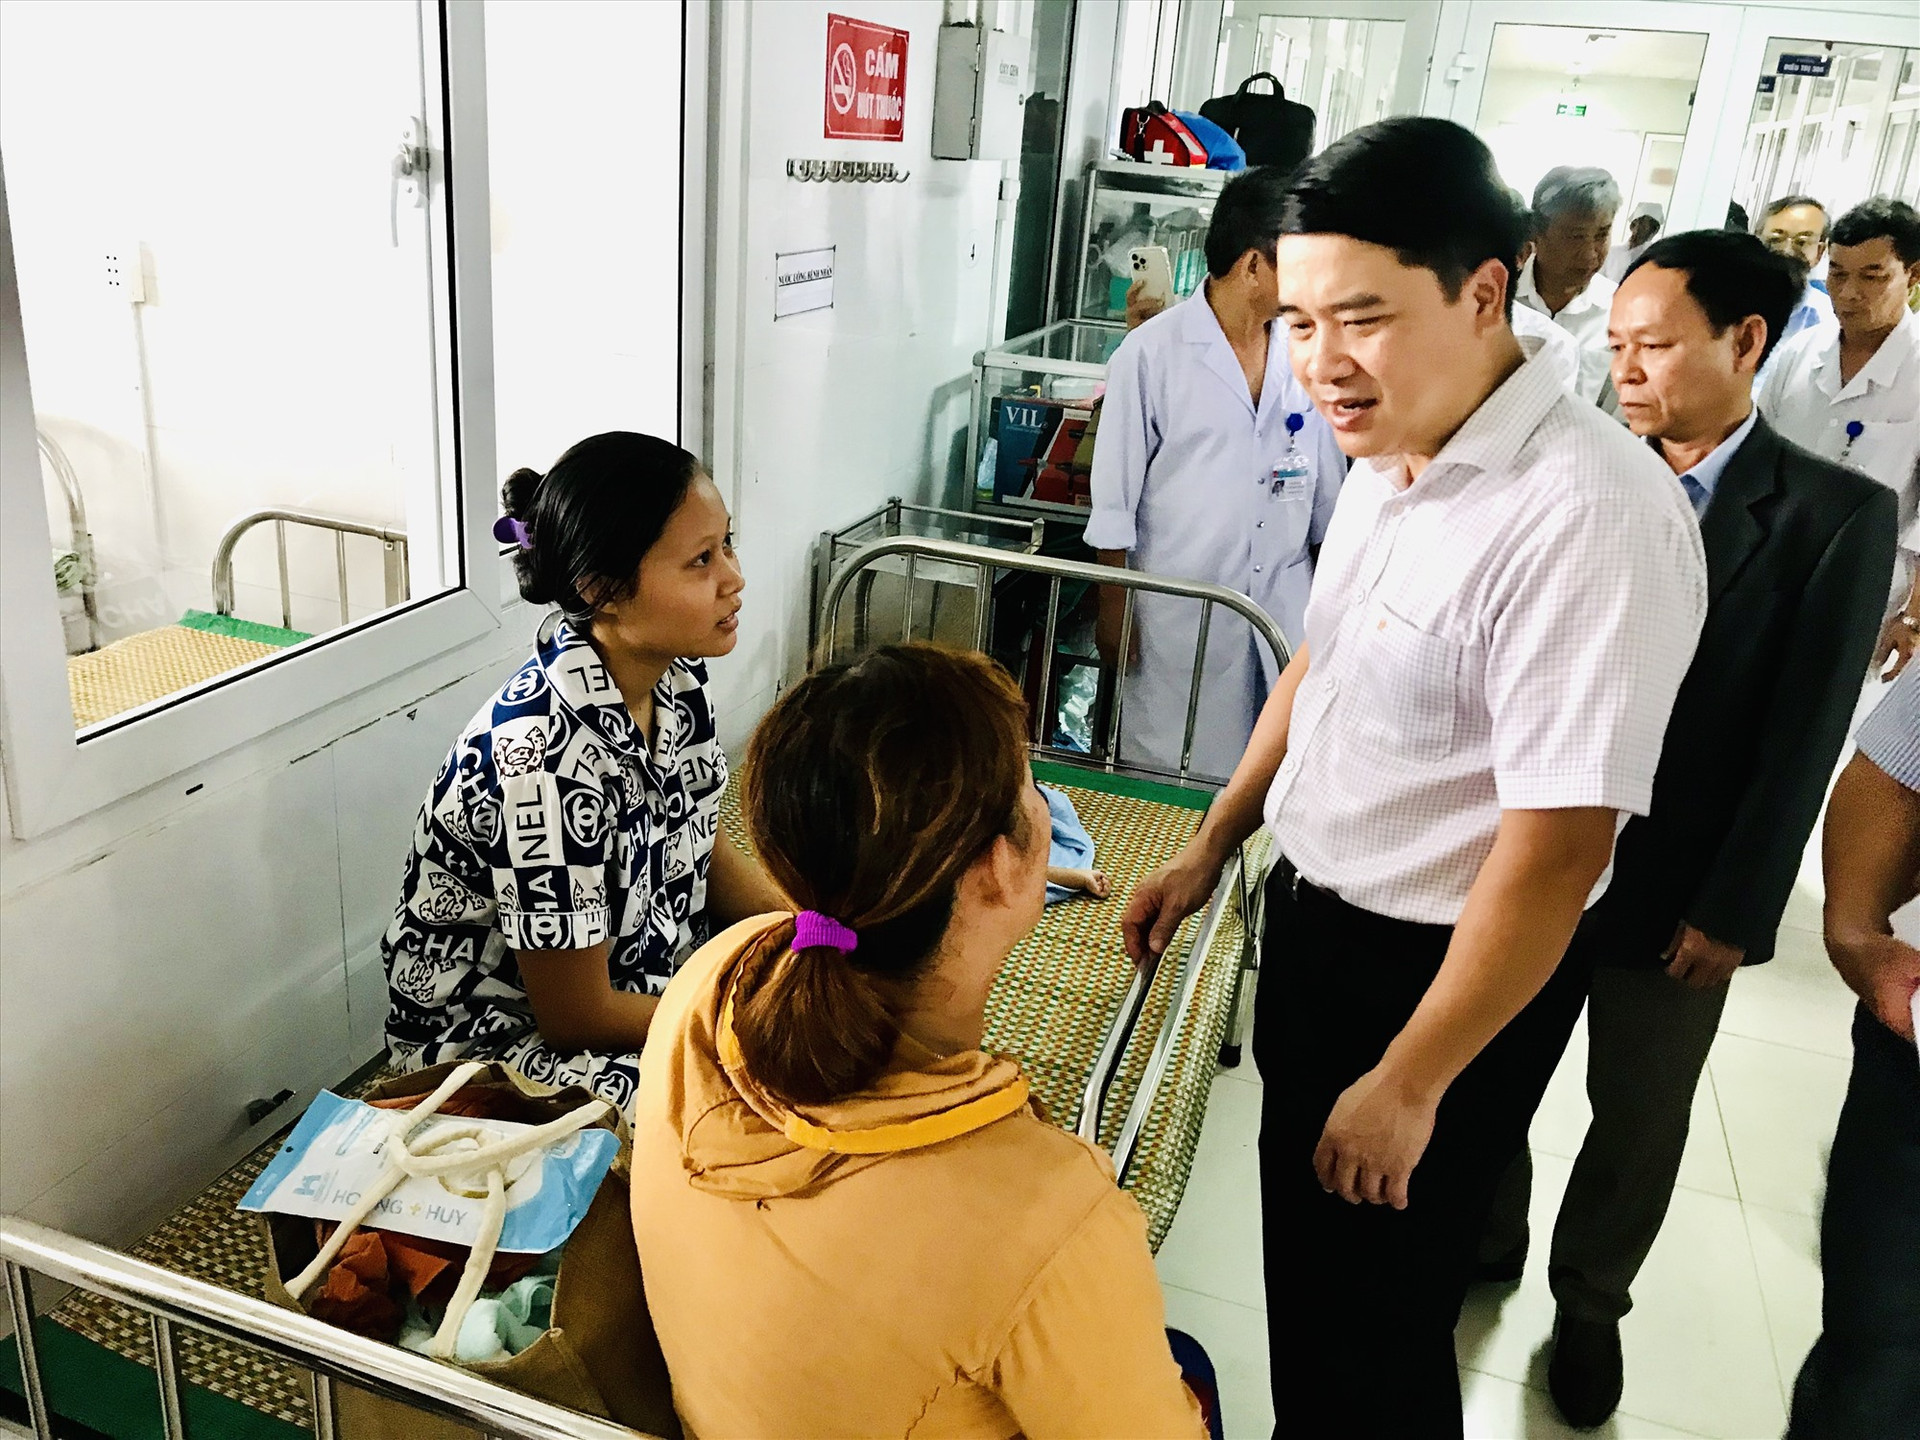 Phó Chủ tịch UBND tỉnh Trần Văn Tân động viên bệnh nhân SXH đang điều trị tại Bệnh viện ĐKKV miền núi phía bắc Quảng Nam. Ảnh: Q.T